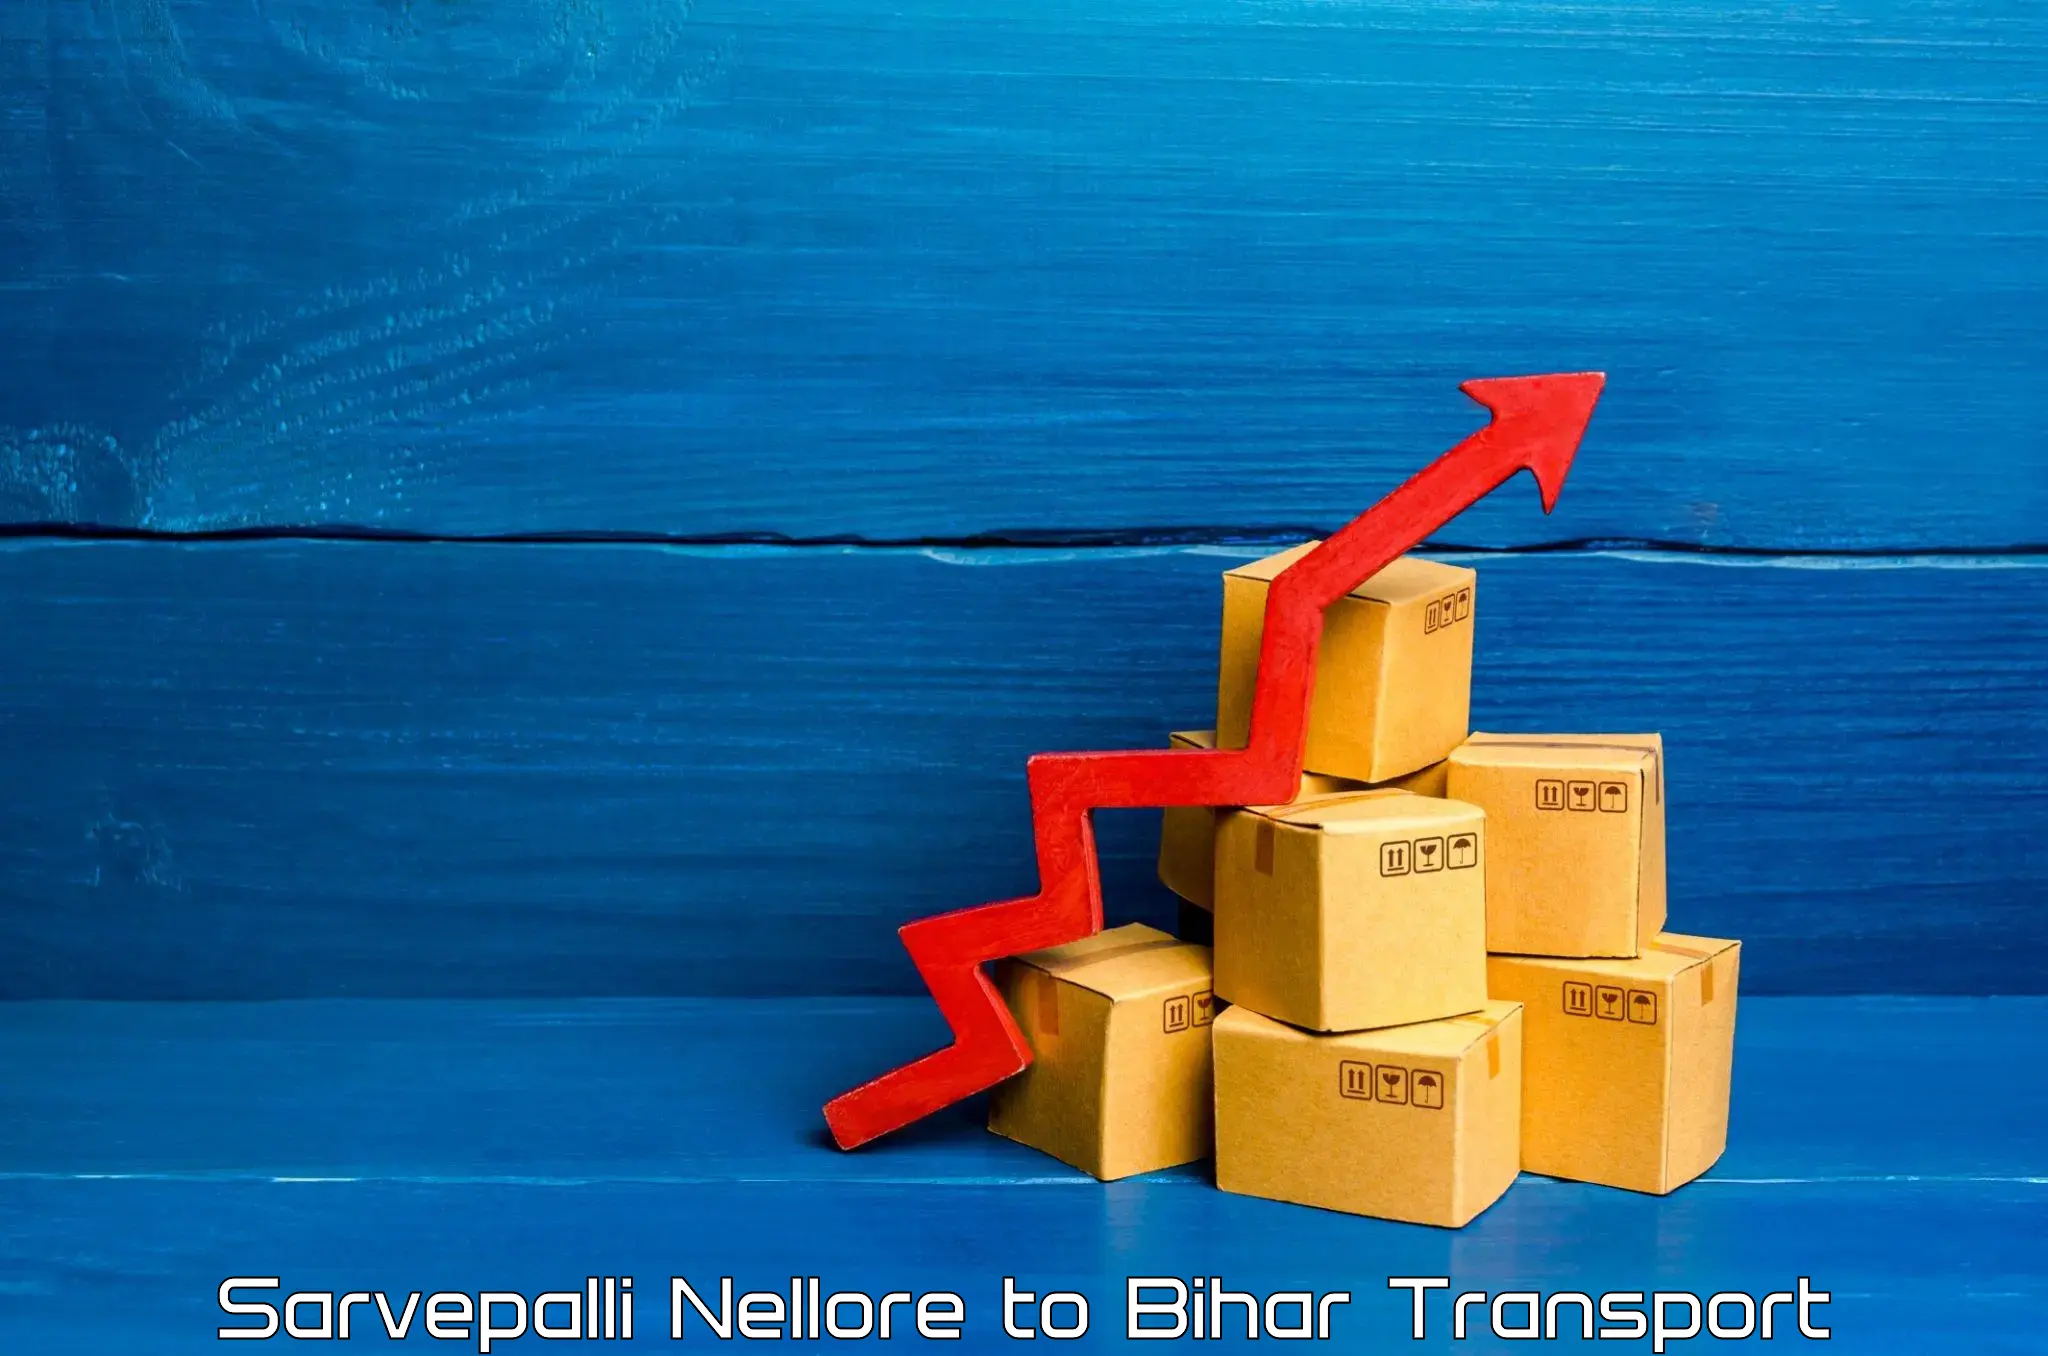 Cargo train transport services Sarvepalli Nellore to Biraul